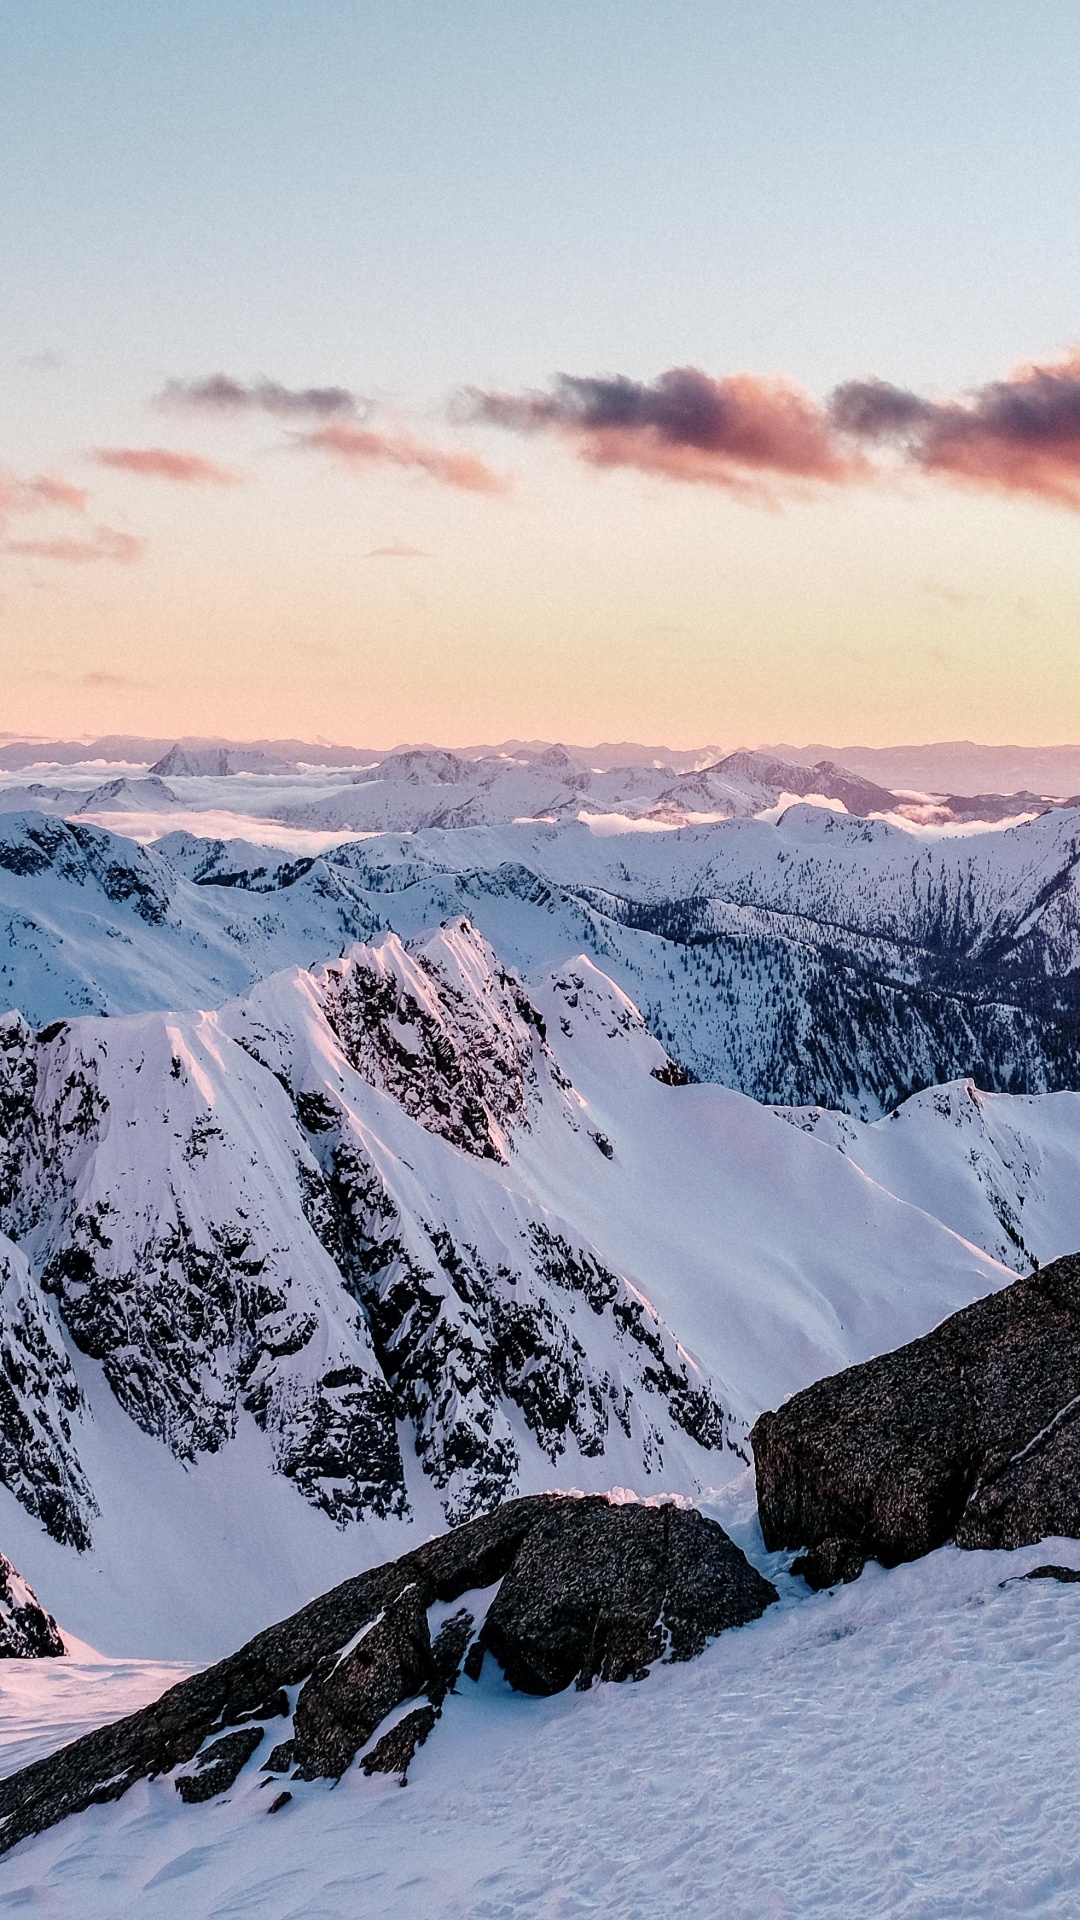 Bergigen Landschaftsformen, Schnee, Winter, Bergkette, Natur. Wallpaper in 1080x1920 Resolution